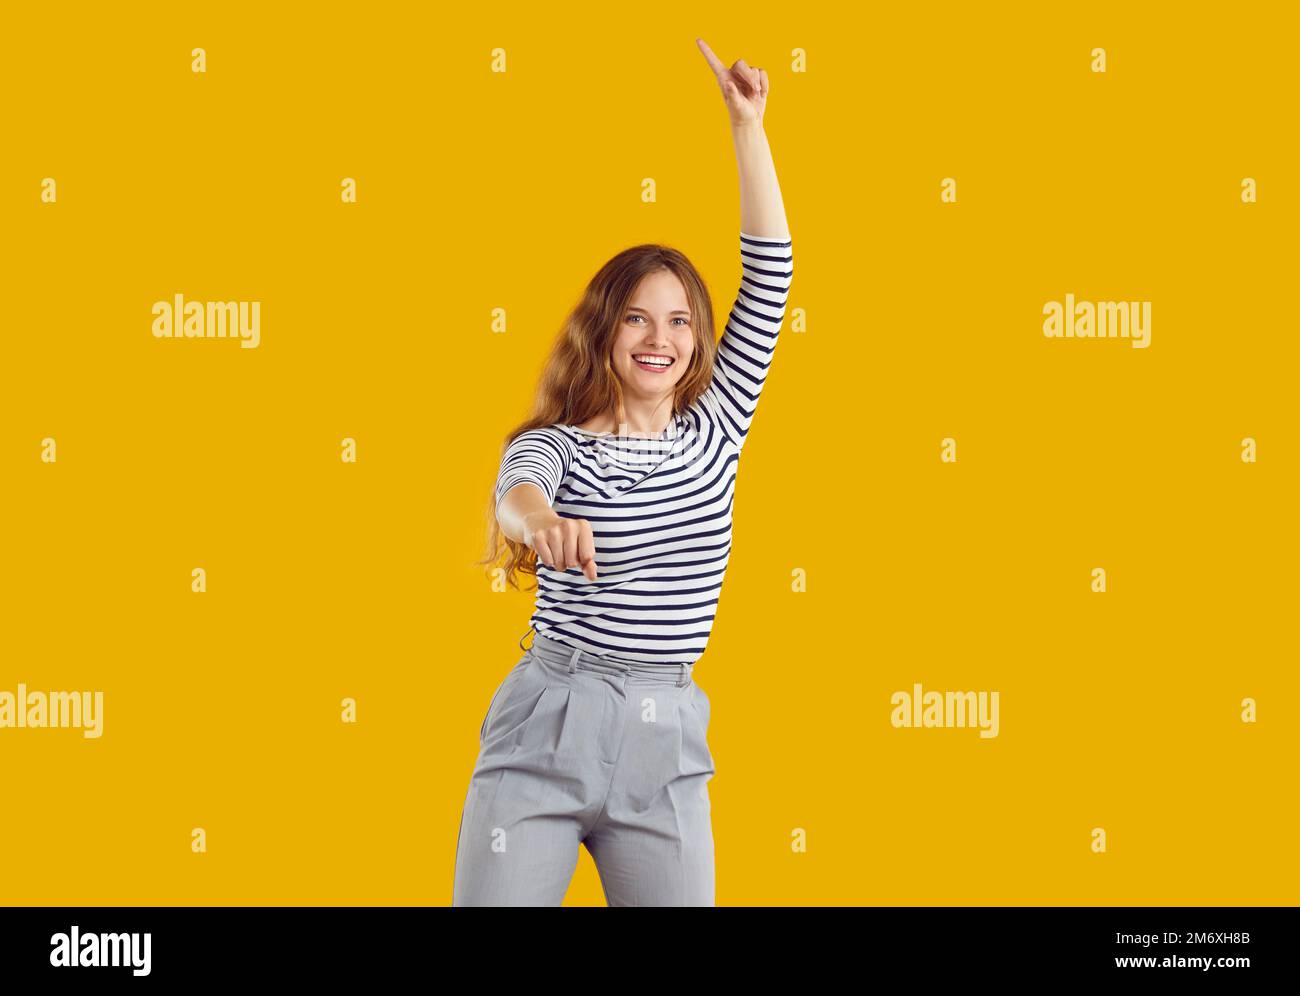 Porträt eines fröhlichen, lustigen jungen Mädchens, das tanzt und springt, isoliert auf gelbem Hintergrund Stockfoto